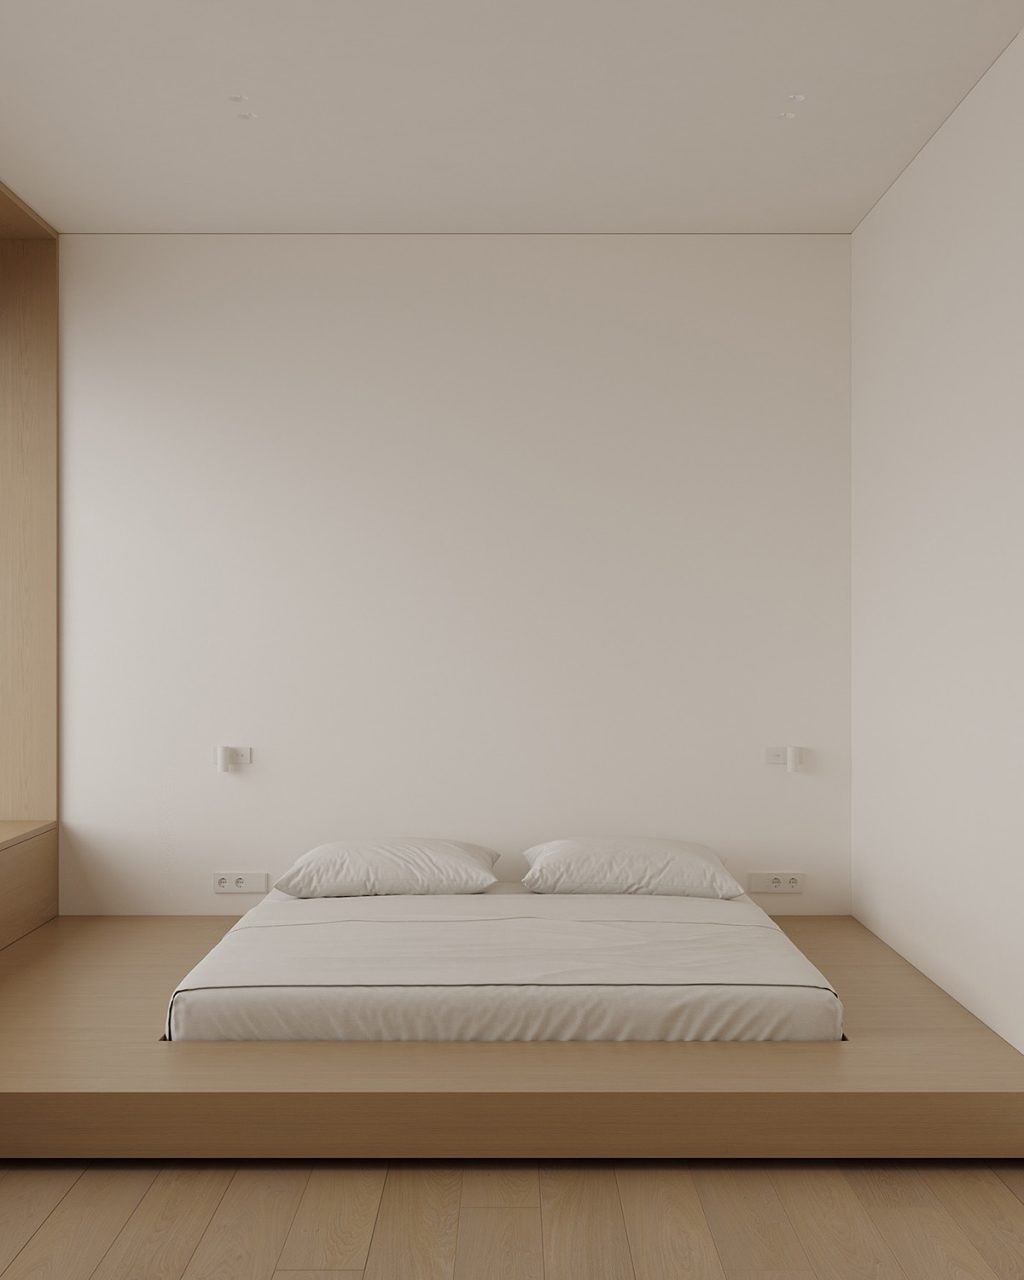 japandi floor bed | Interior Design Ideas